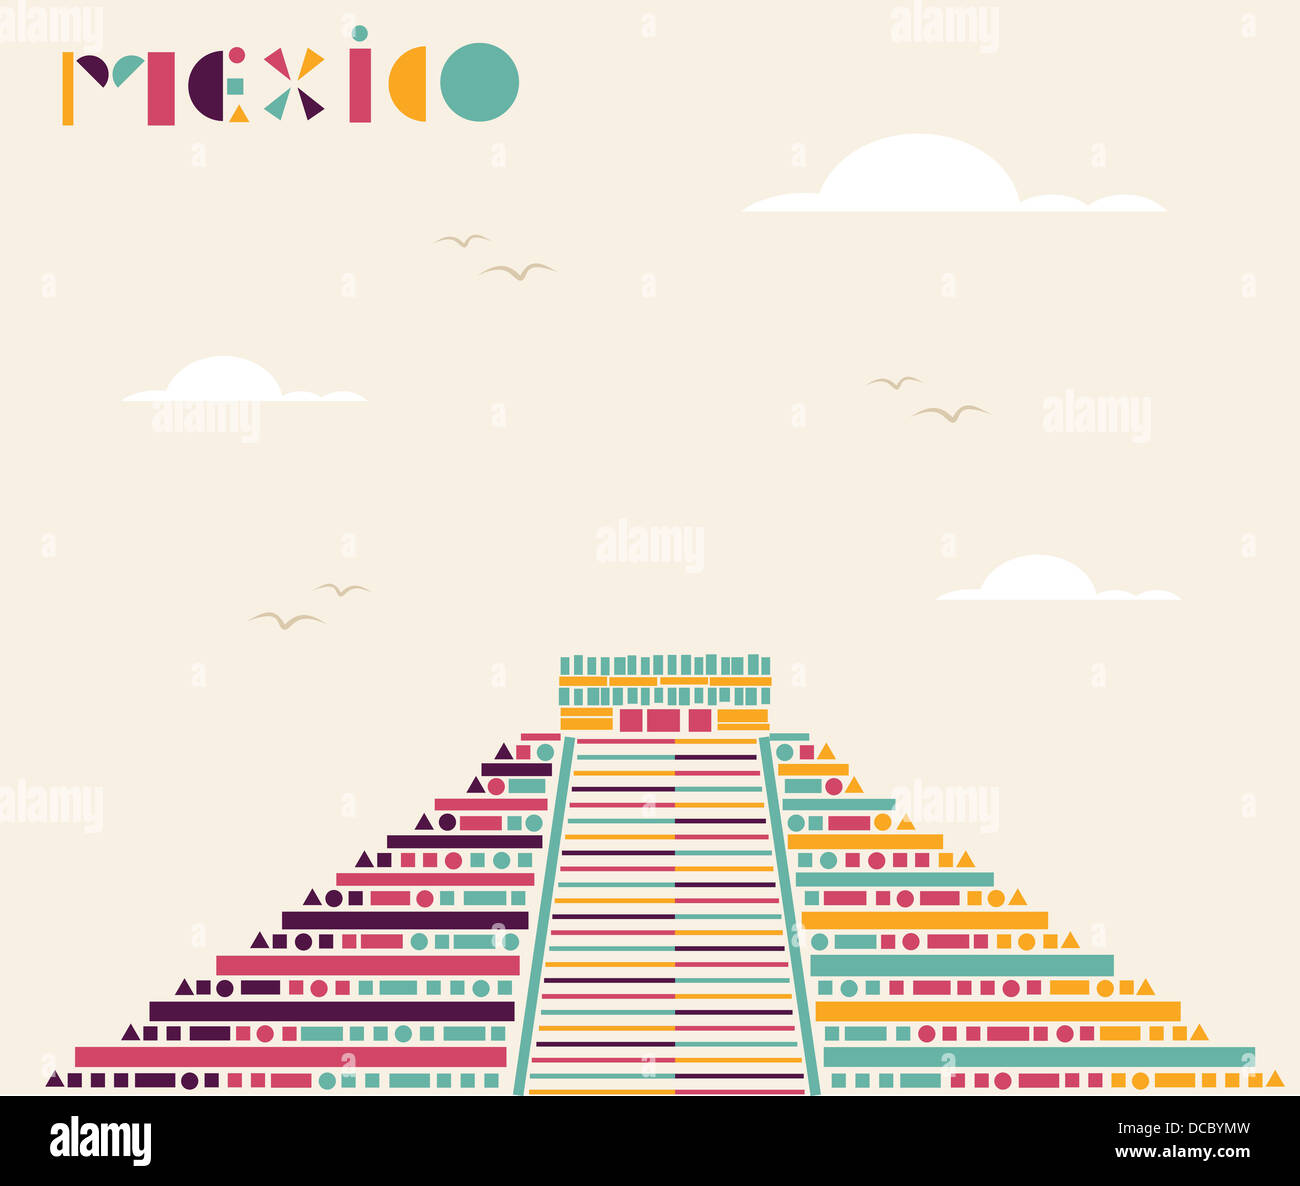 La piramide messicana triangolo figura geometrica. File vettoriale stratificata per una facile manipolazione e colorazione personalizzata. Foto Stock